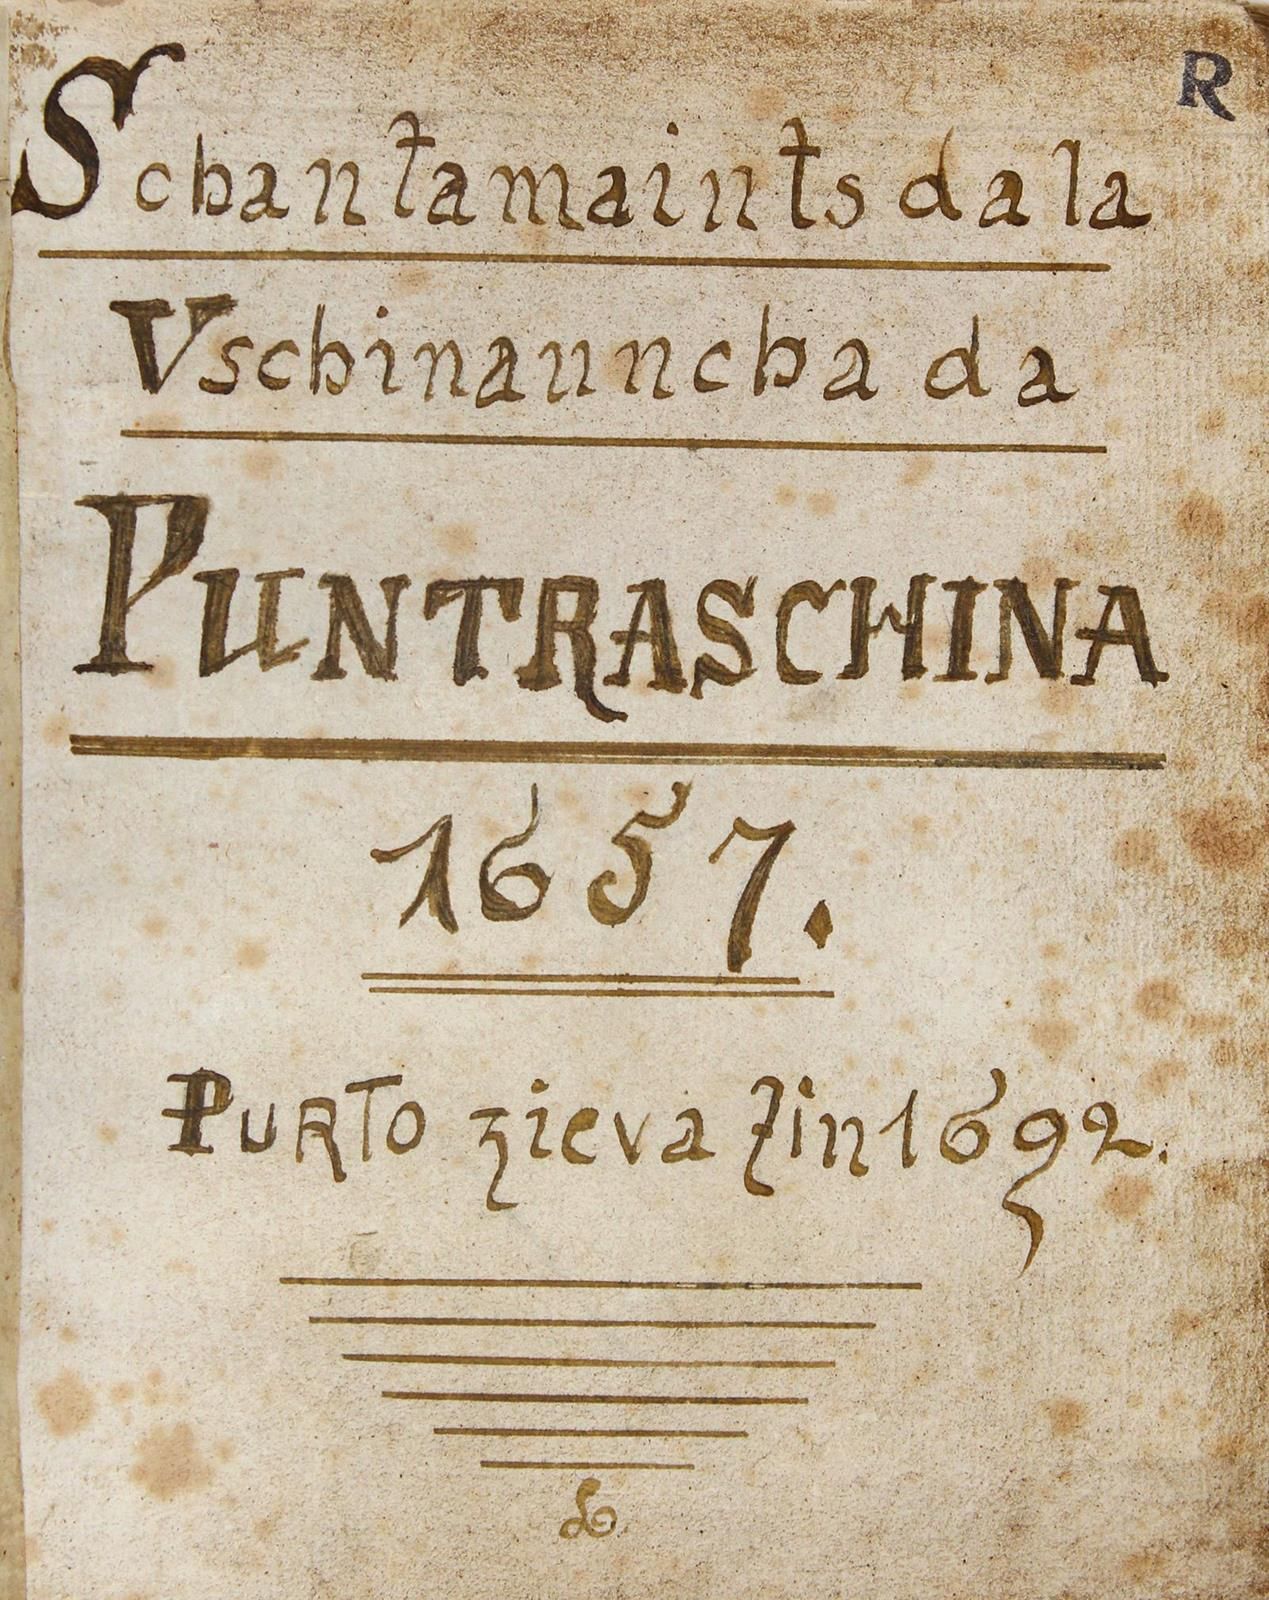 Schantamaints da la Vschinauncha da Puntraschina 1657 purto zieva zin 1692.Rhaet&hellip;